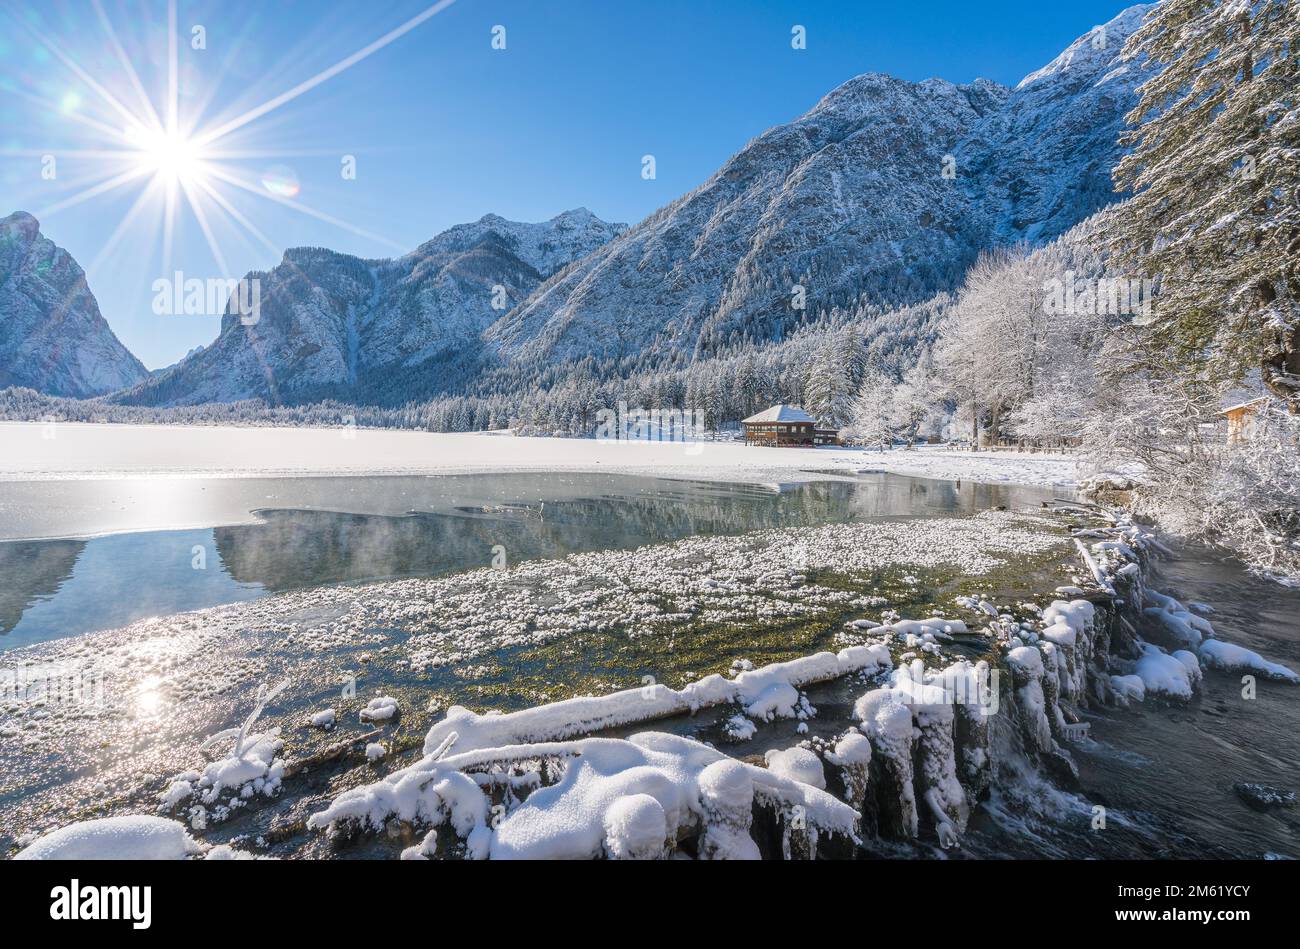 Una mañana soleada de invierno ata nevado y helado lago Dobbiaco, provincia de Bolzano, Trentino Alto Adige, Italia. Foto de stock